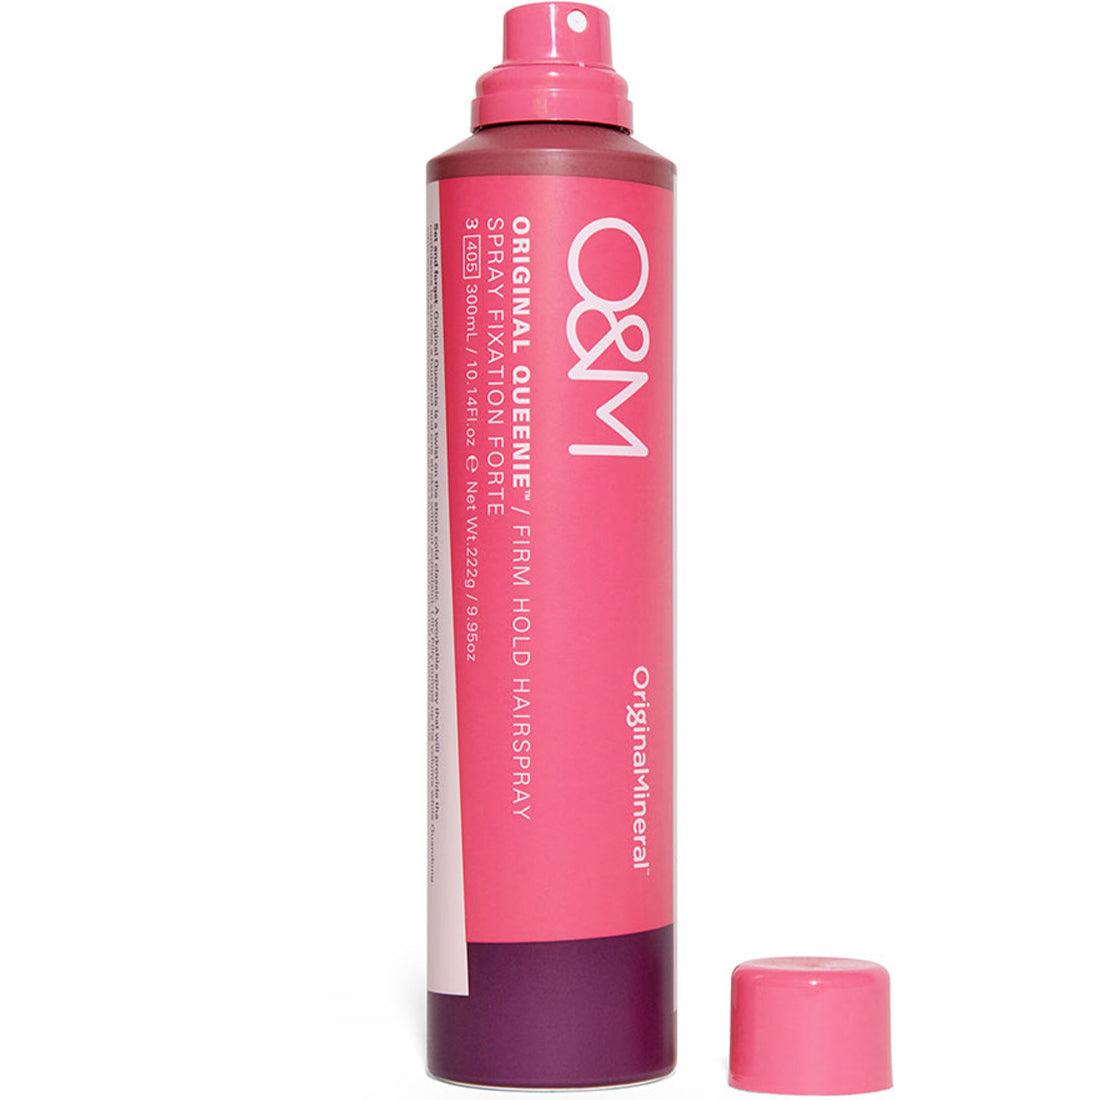 O&M Original Queenie Firm Hold Hair Spray